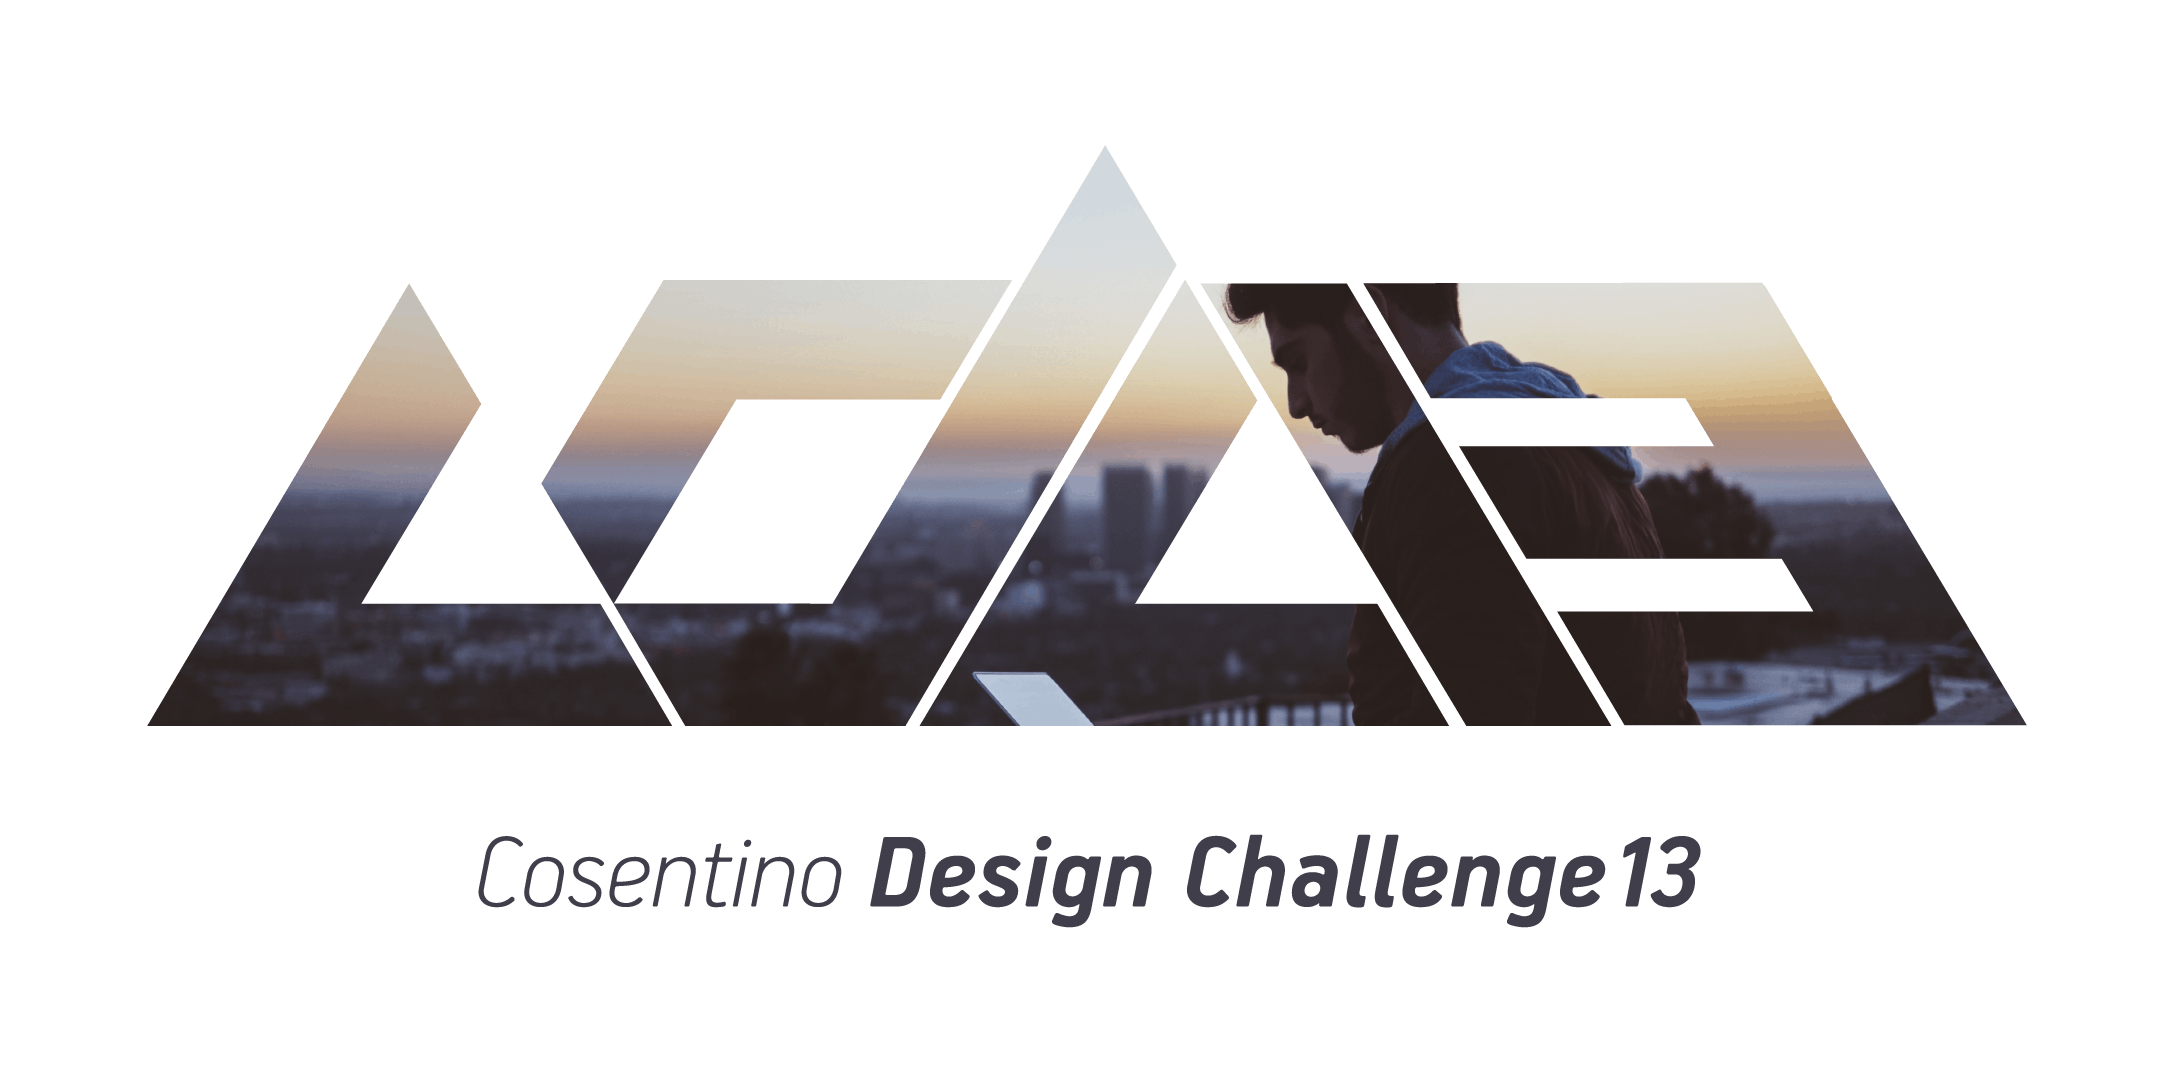 Cosentino Design Challenge 13th Edition